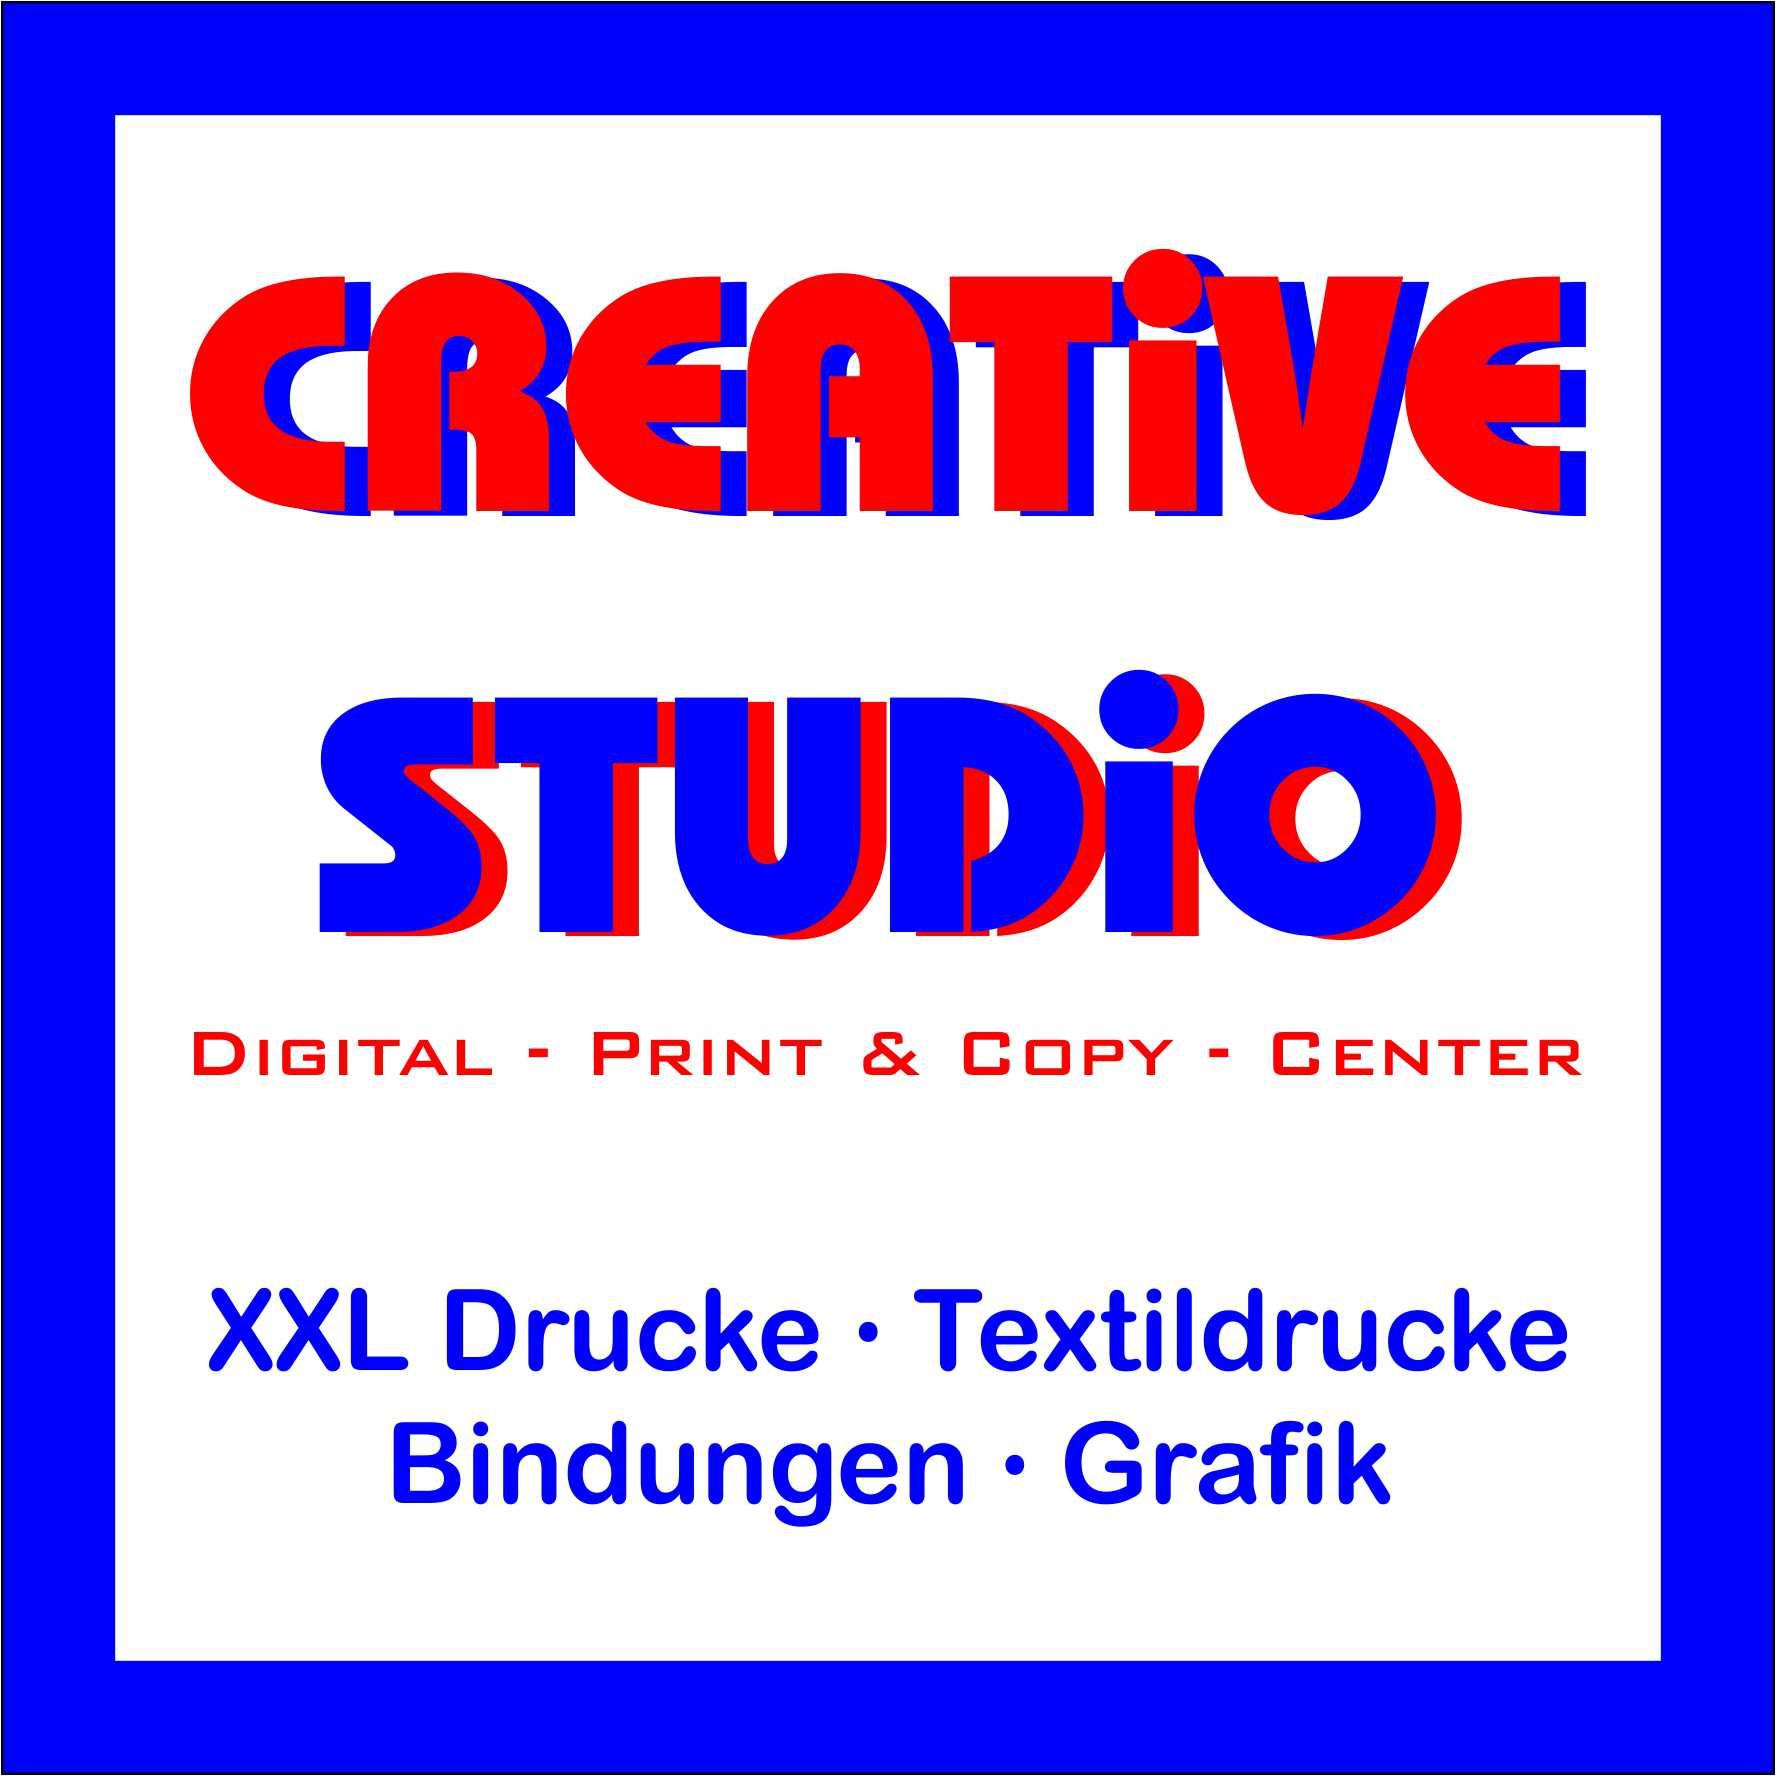 Creative Studio in Köln - Logo